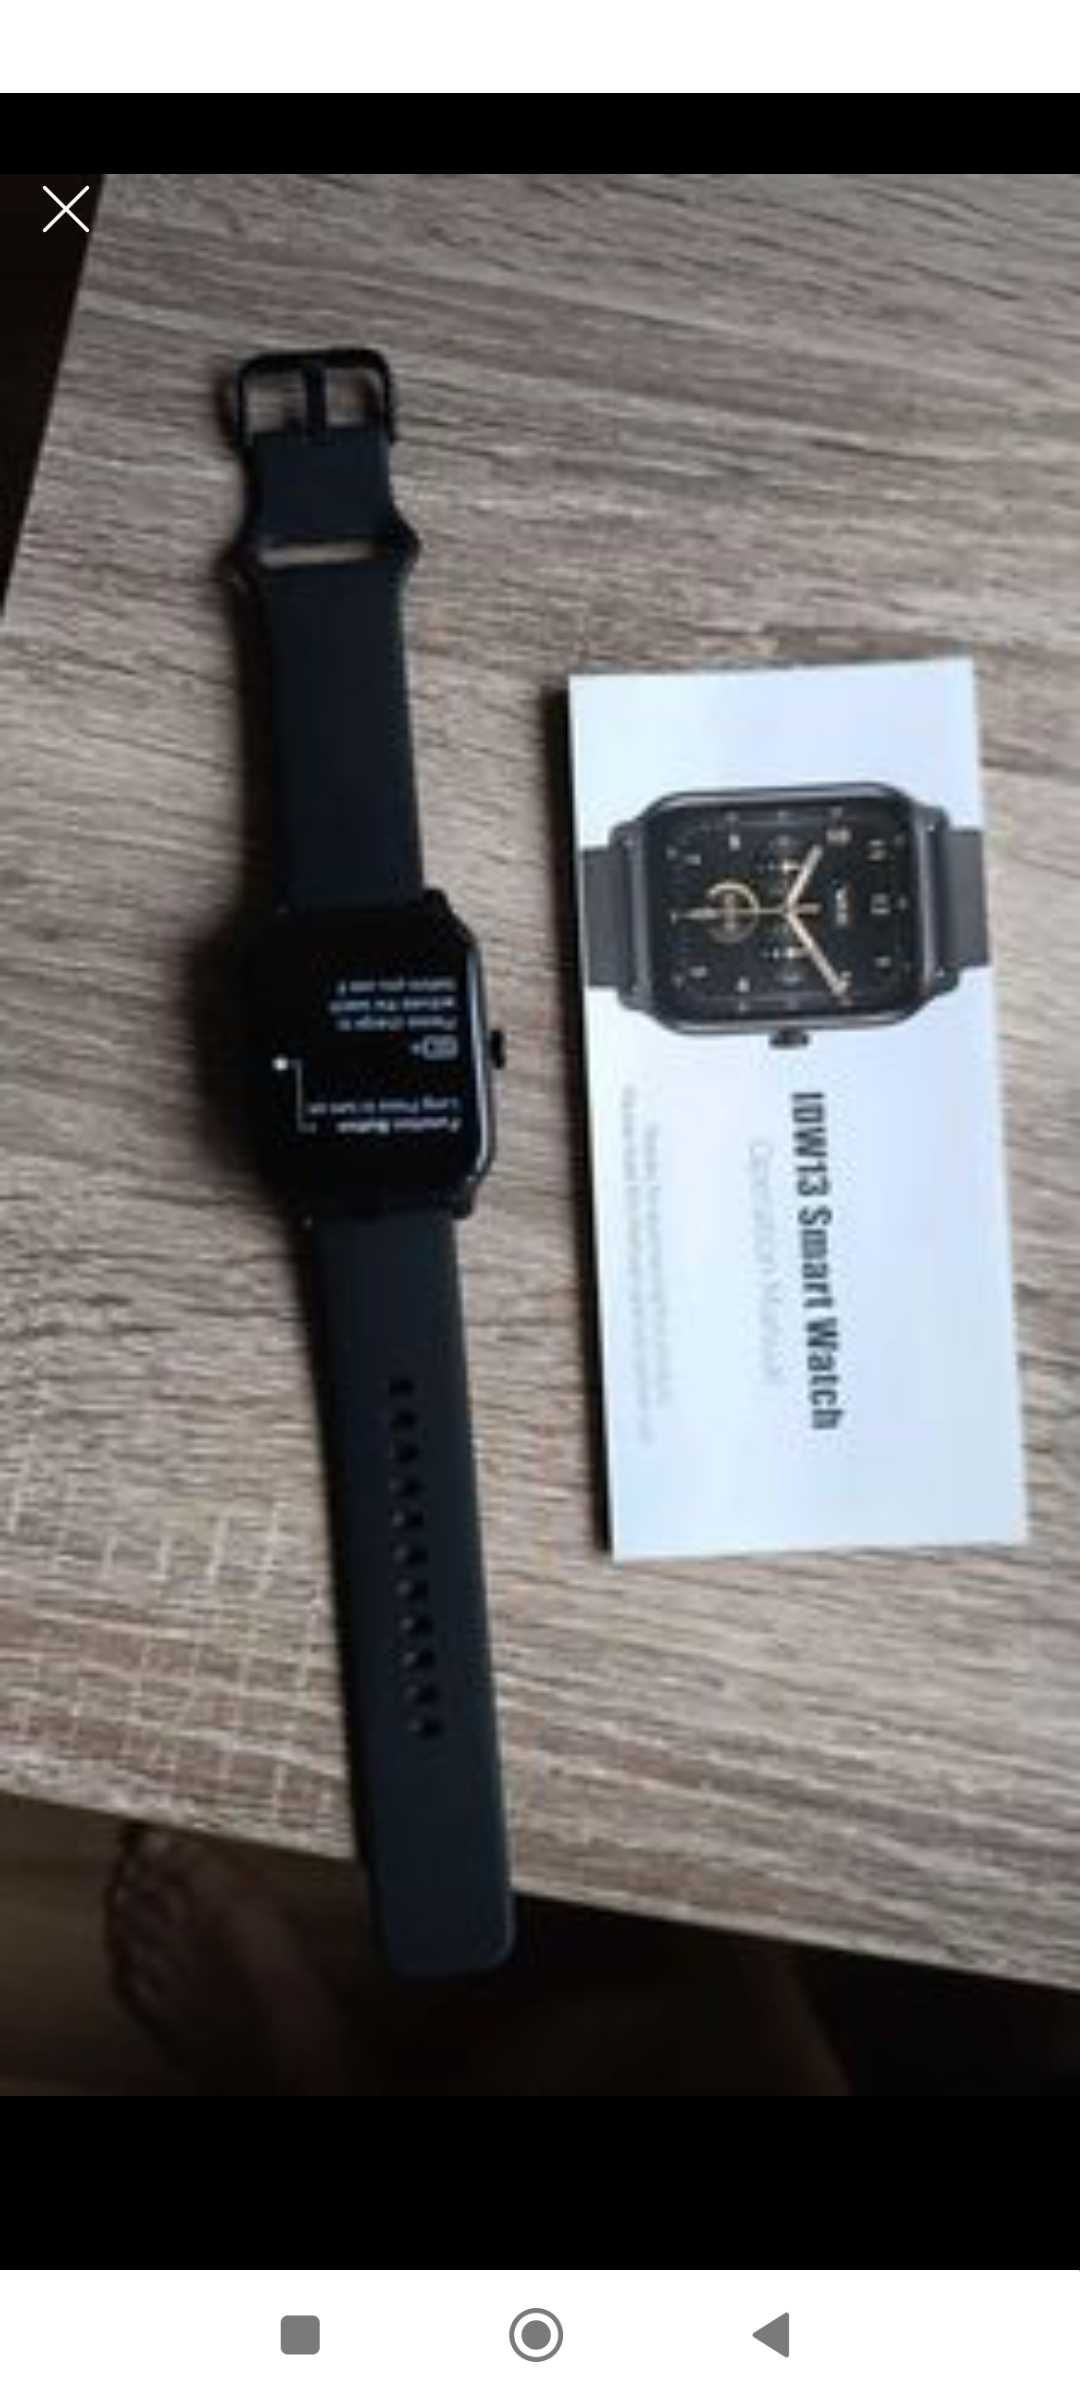 Smartch watch Alexa built-in